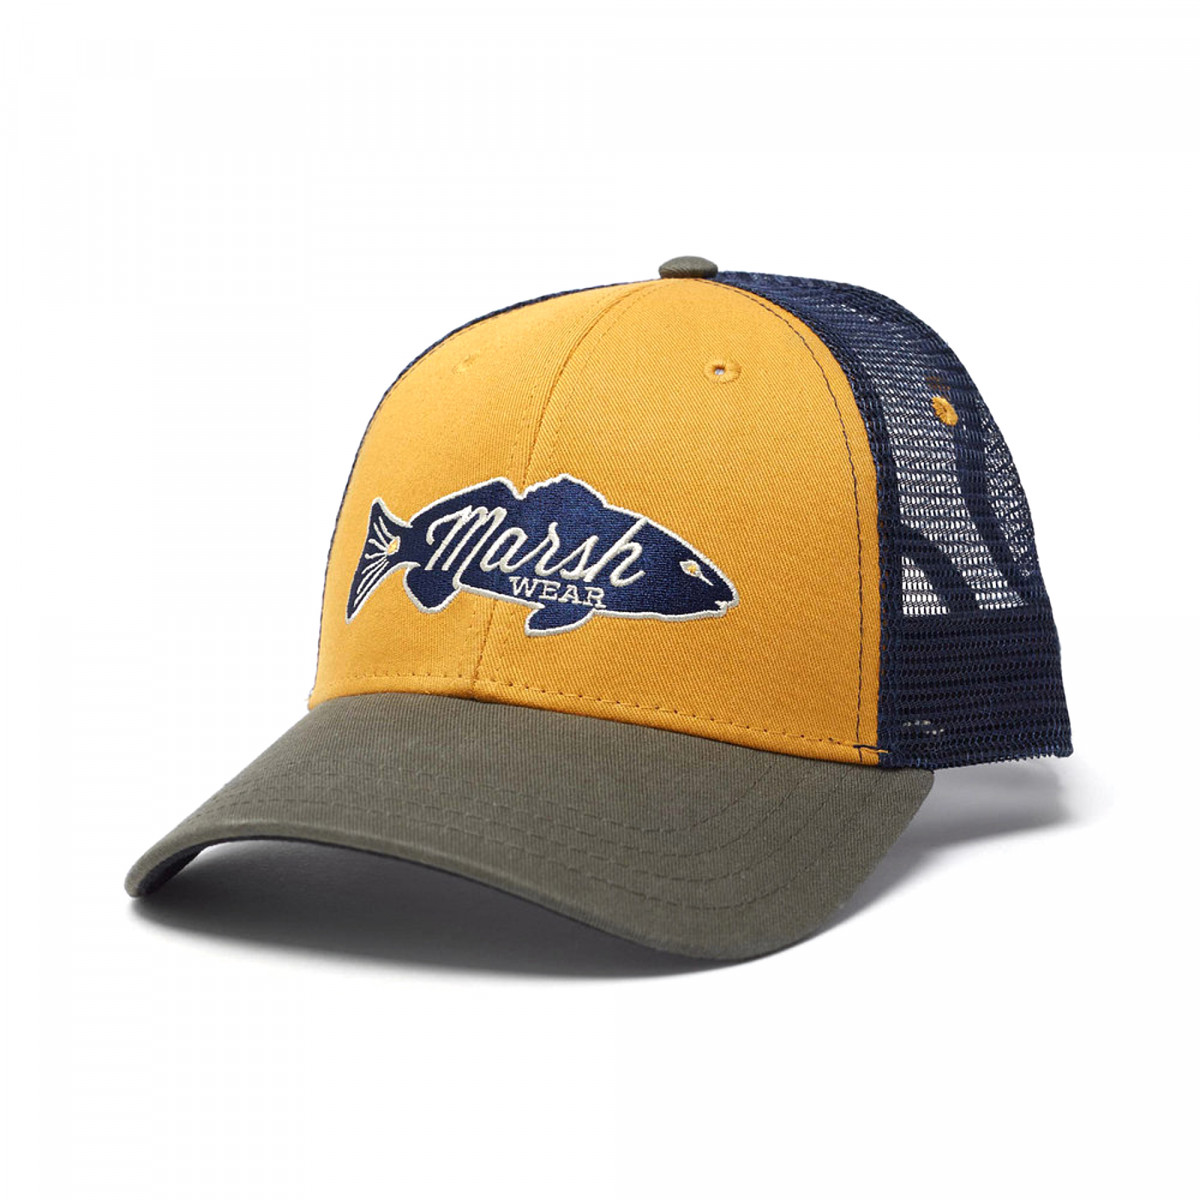 E-commerce, amazon photography of Marshware trucker style baseball cap on white background.